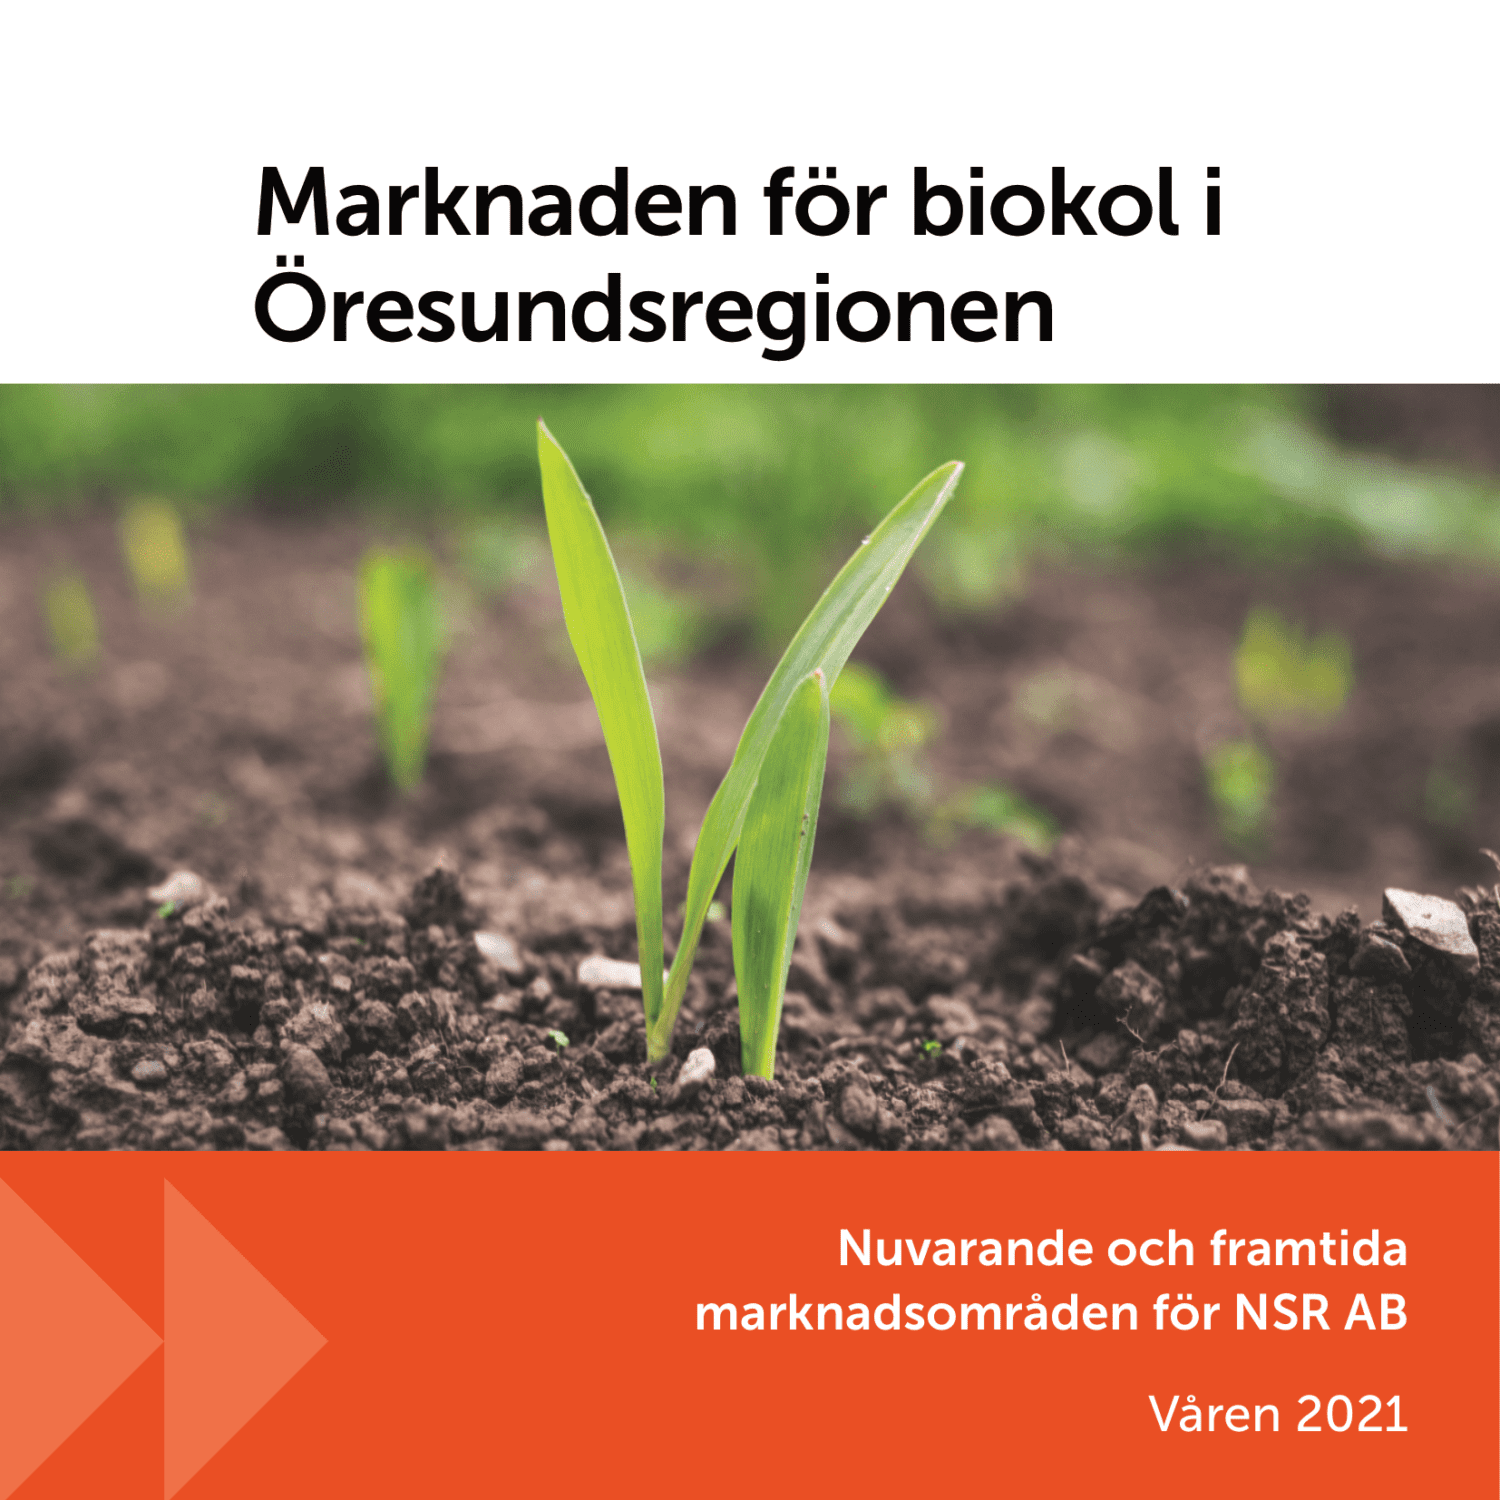 2050-Marknaden-for-biokol-i-Oresundsregionen-01